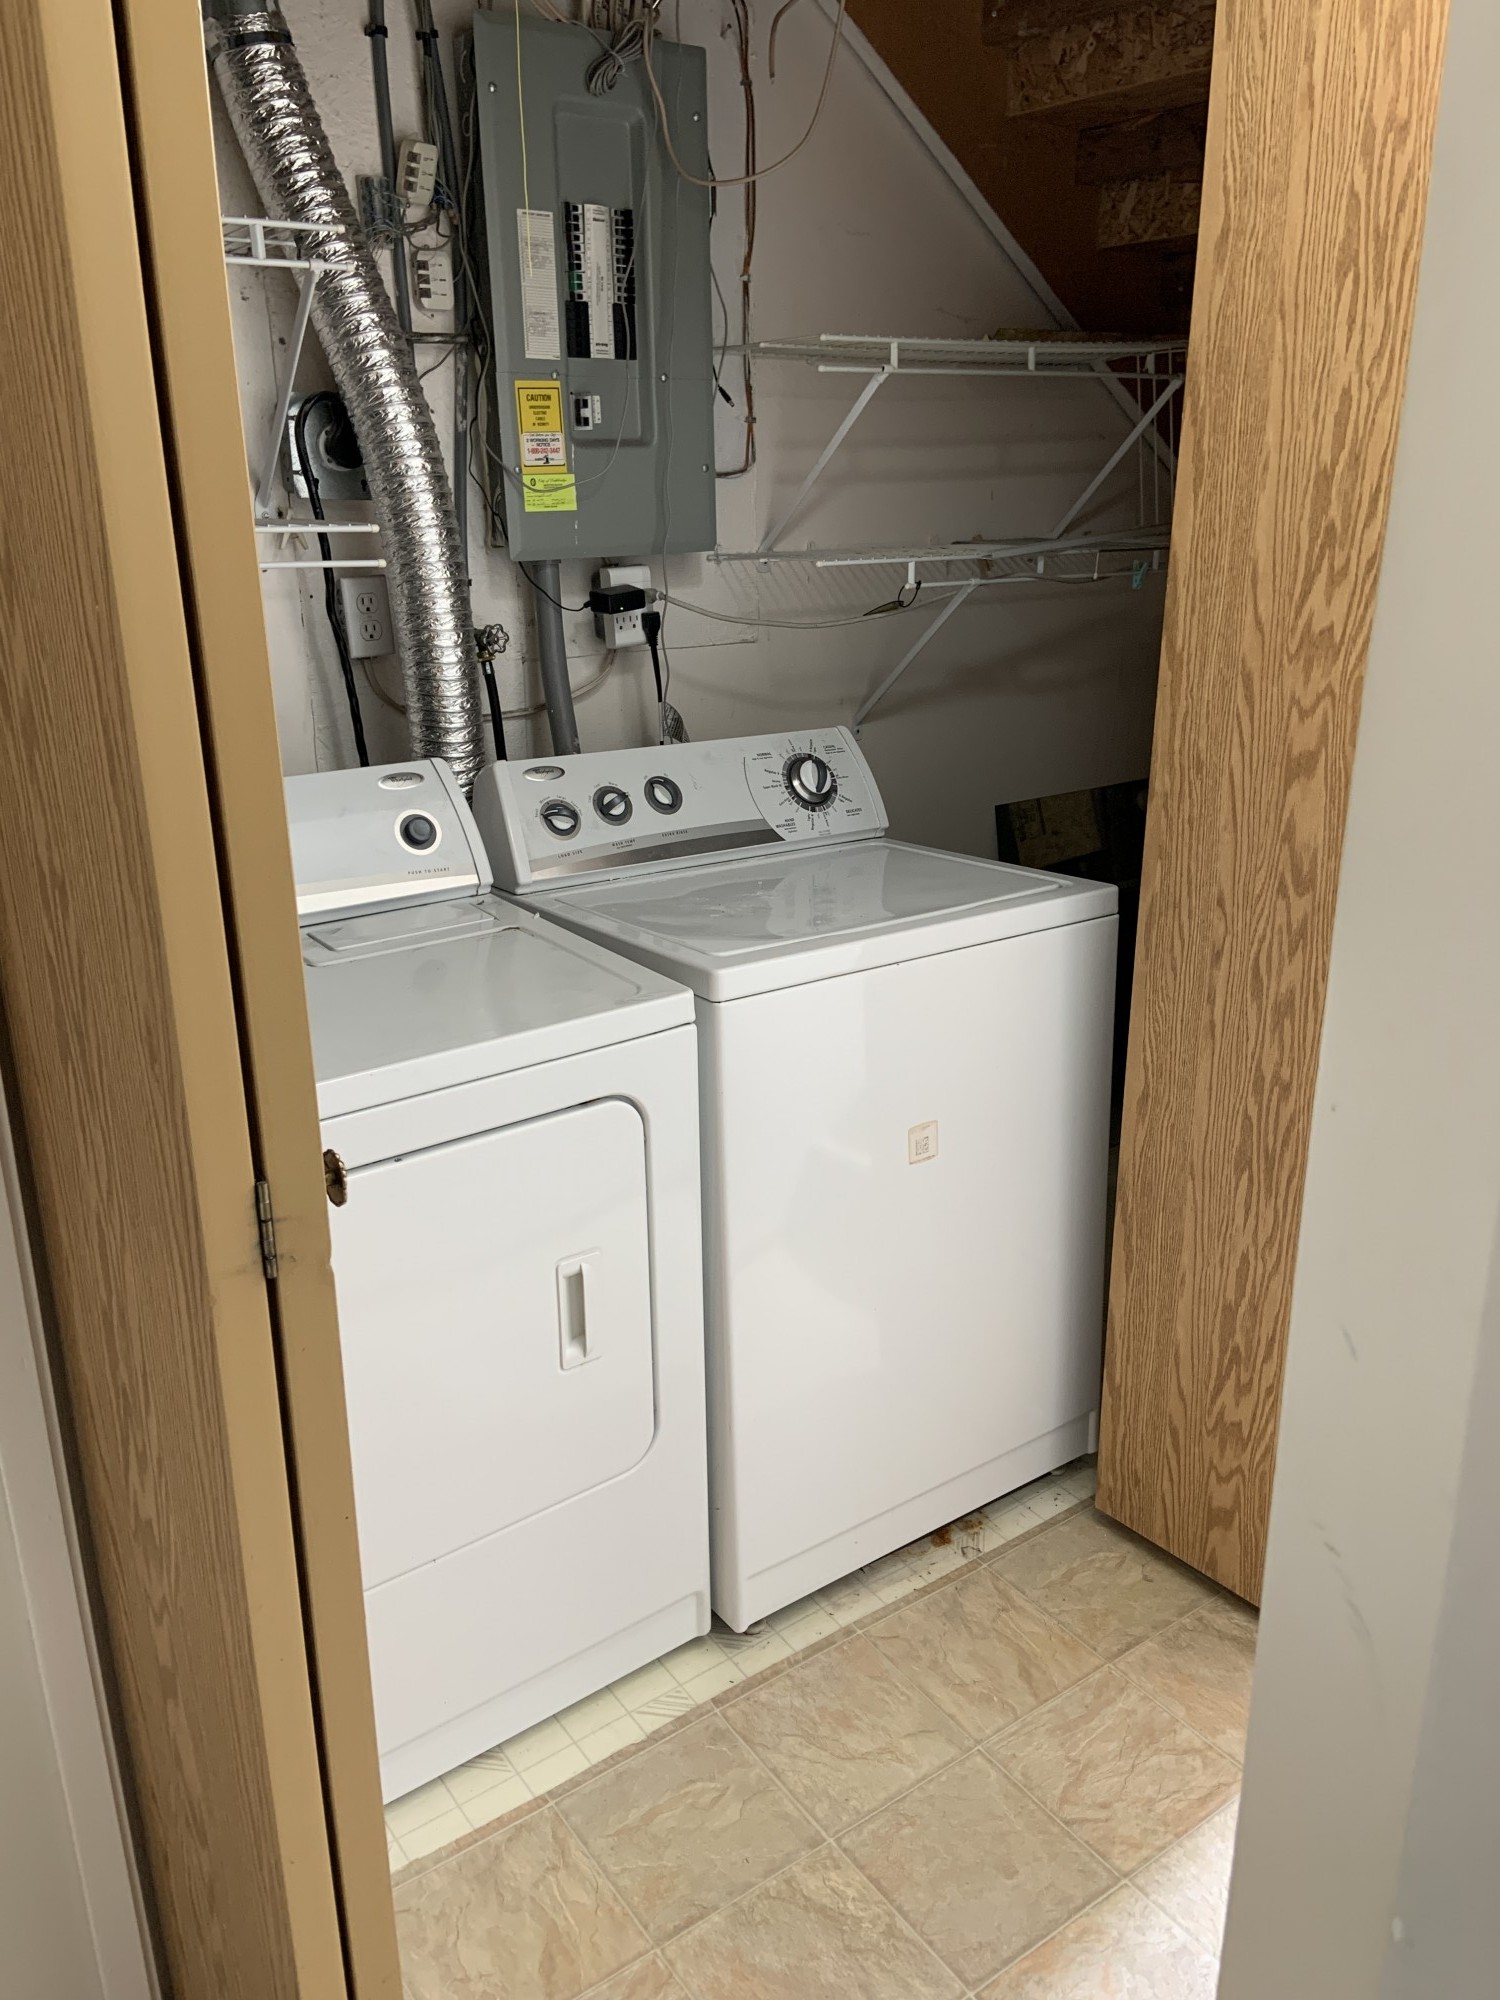 Utility/Laundry Closet Key Image